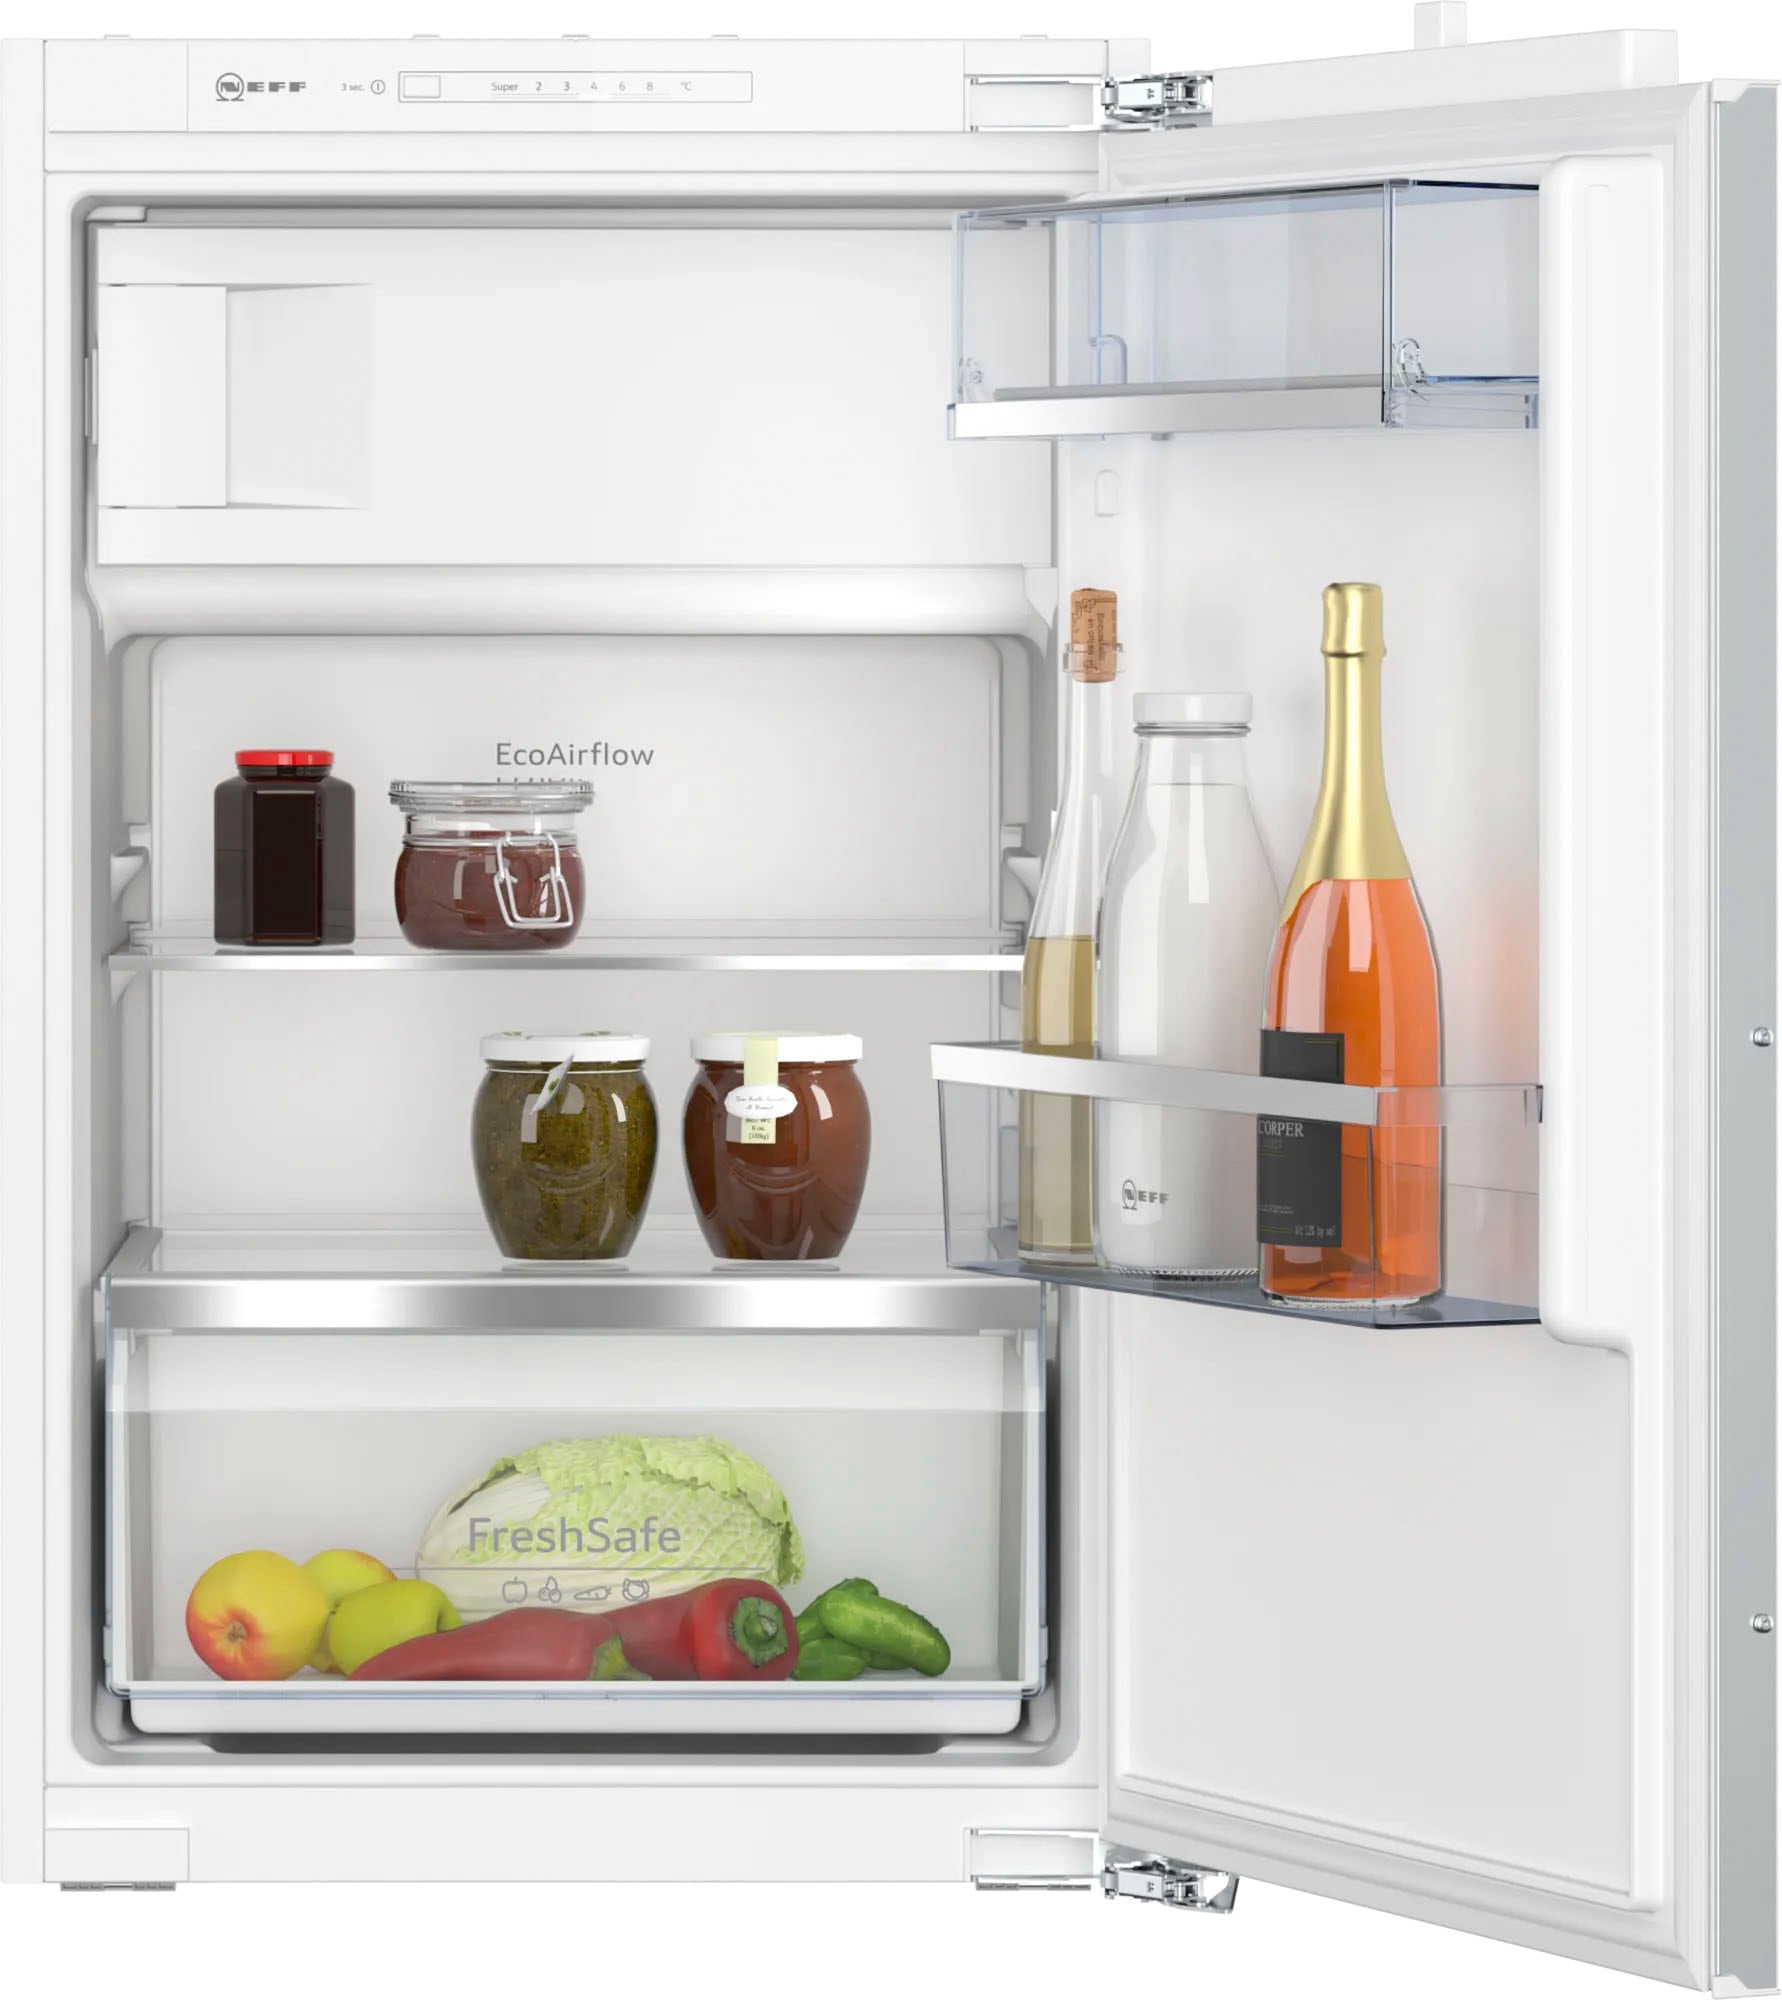 NEFF Einbaukühlschrank »KI2222FE0«, KI2222FE0, 87,4 cm hoch, 56 cm breit, Fresh Safe: Schublade für flexible Lagerung von Obst & Gemüse